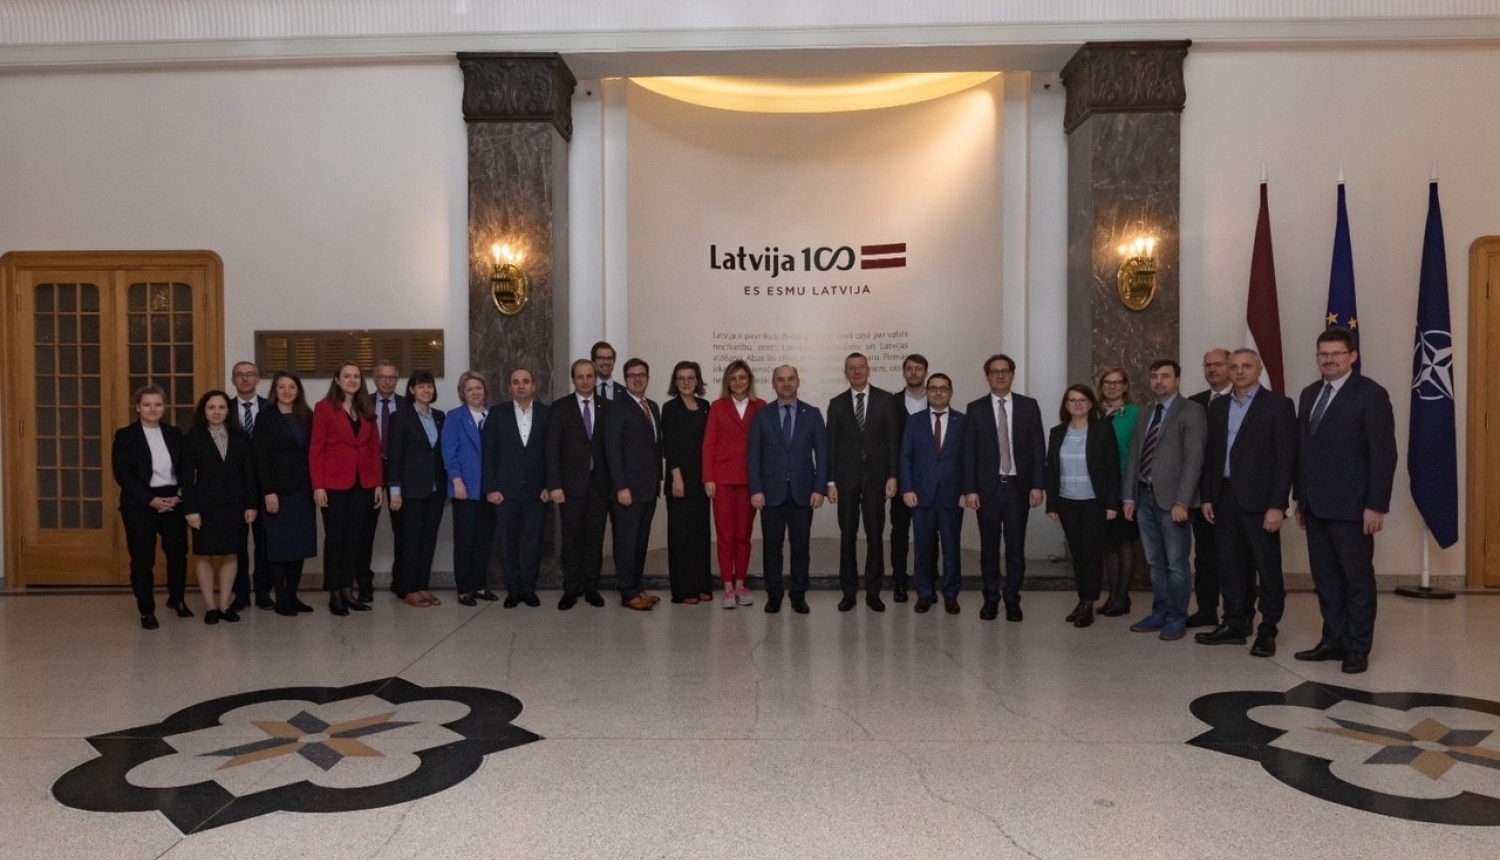 Ārlietu ministrs- Latvija dalīsies pieredzē un atbalstīs Moldovu digitalizācijas jautājumos